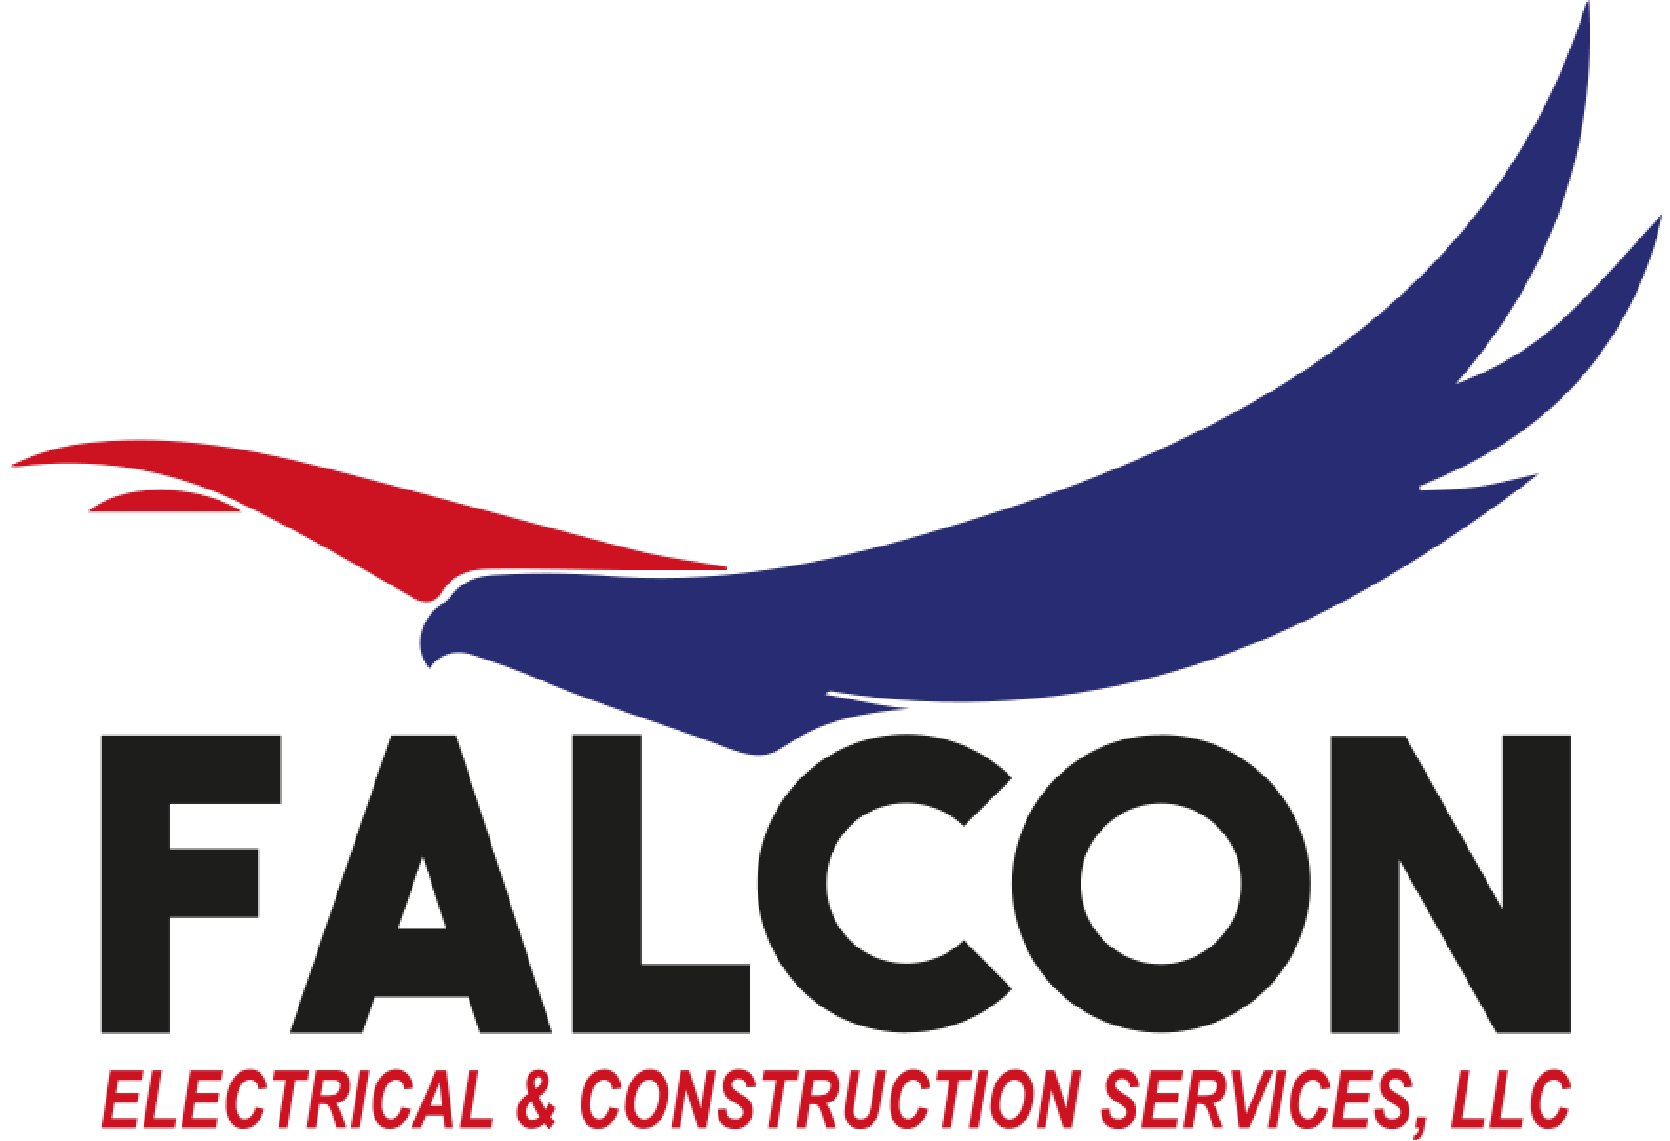 falcon logo 01